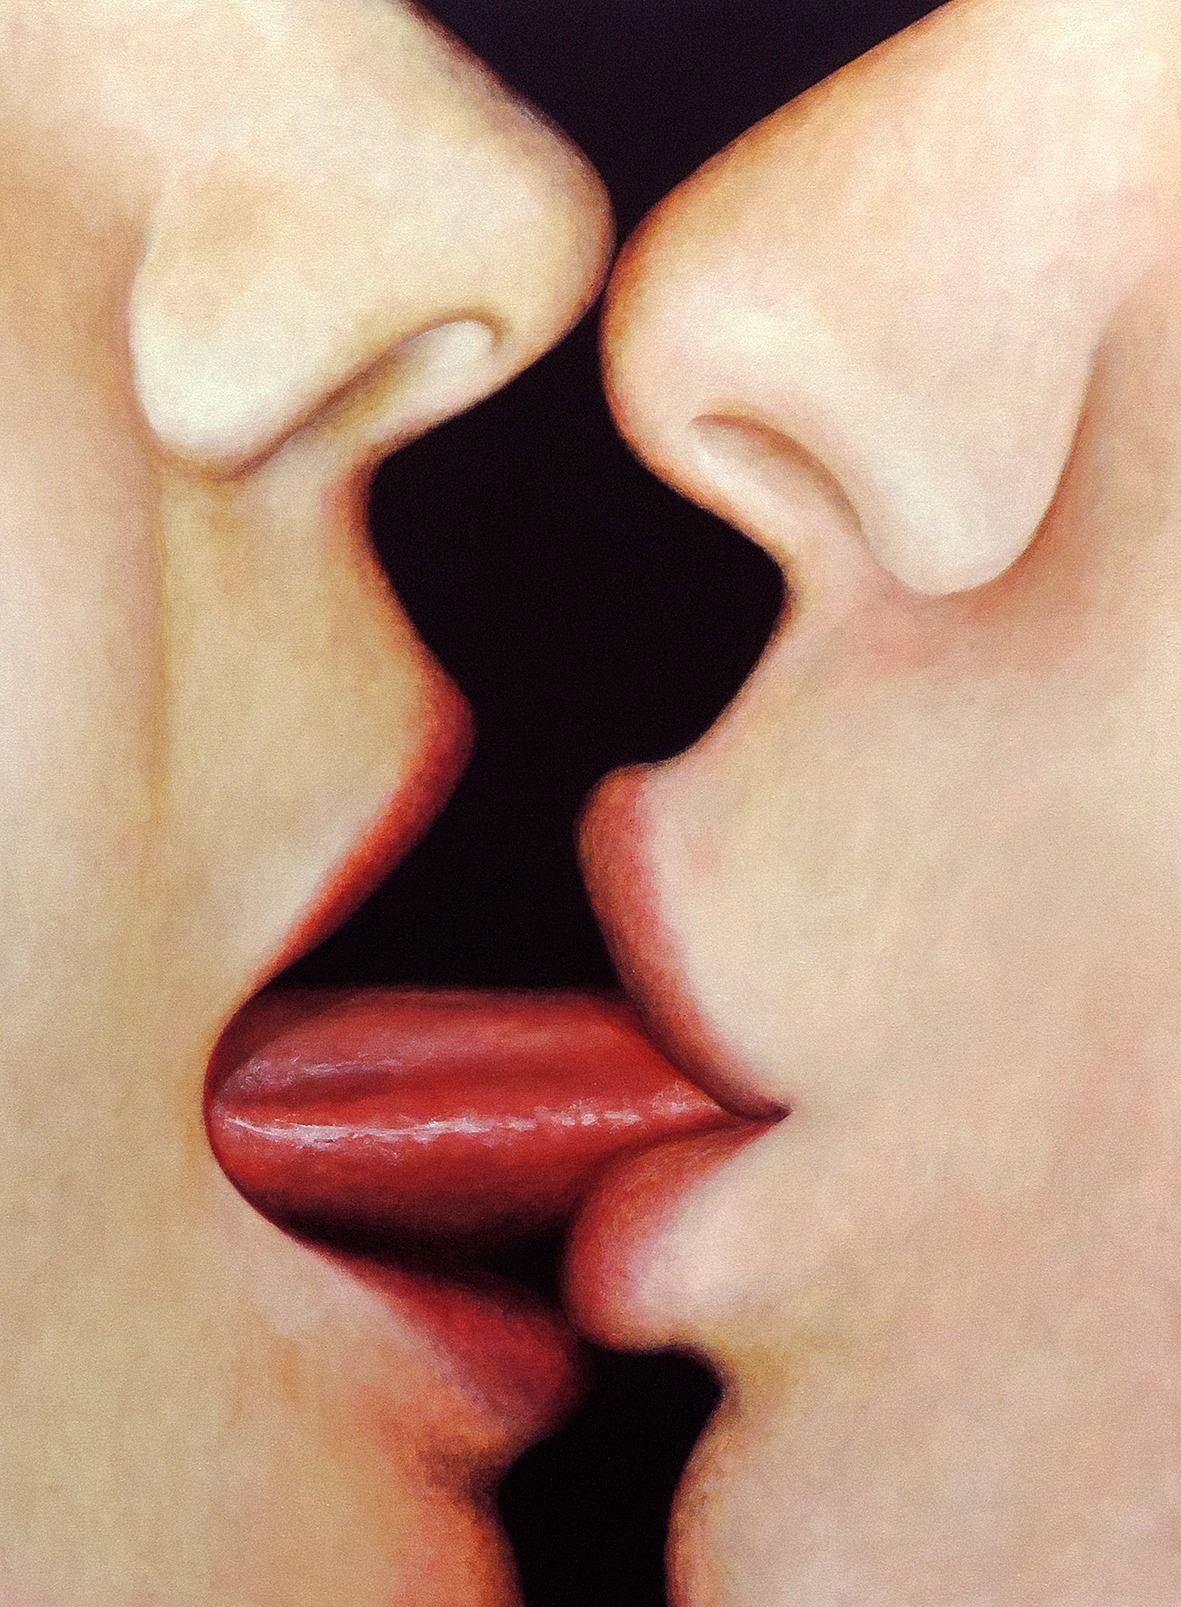 How lesbians. Поцелуй с языком. Поцелуй в губы. Французский поцелуй. Целующие губы.